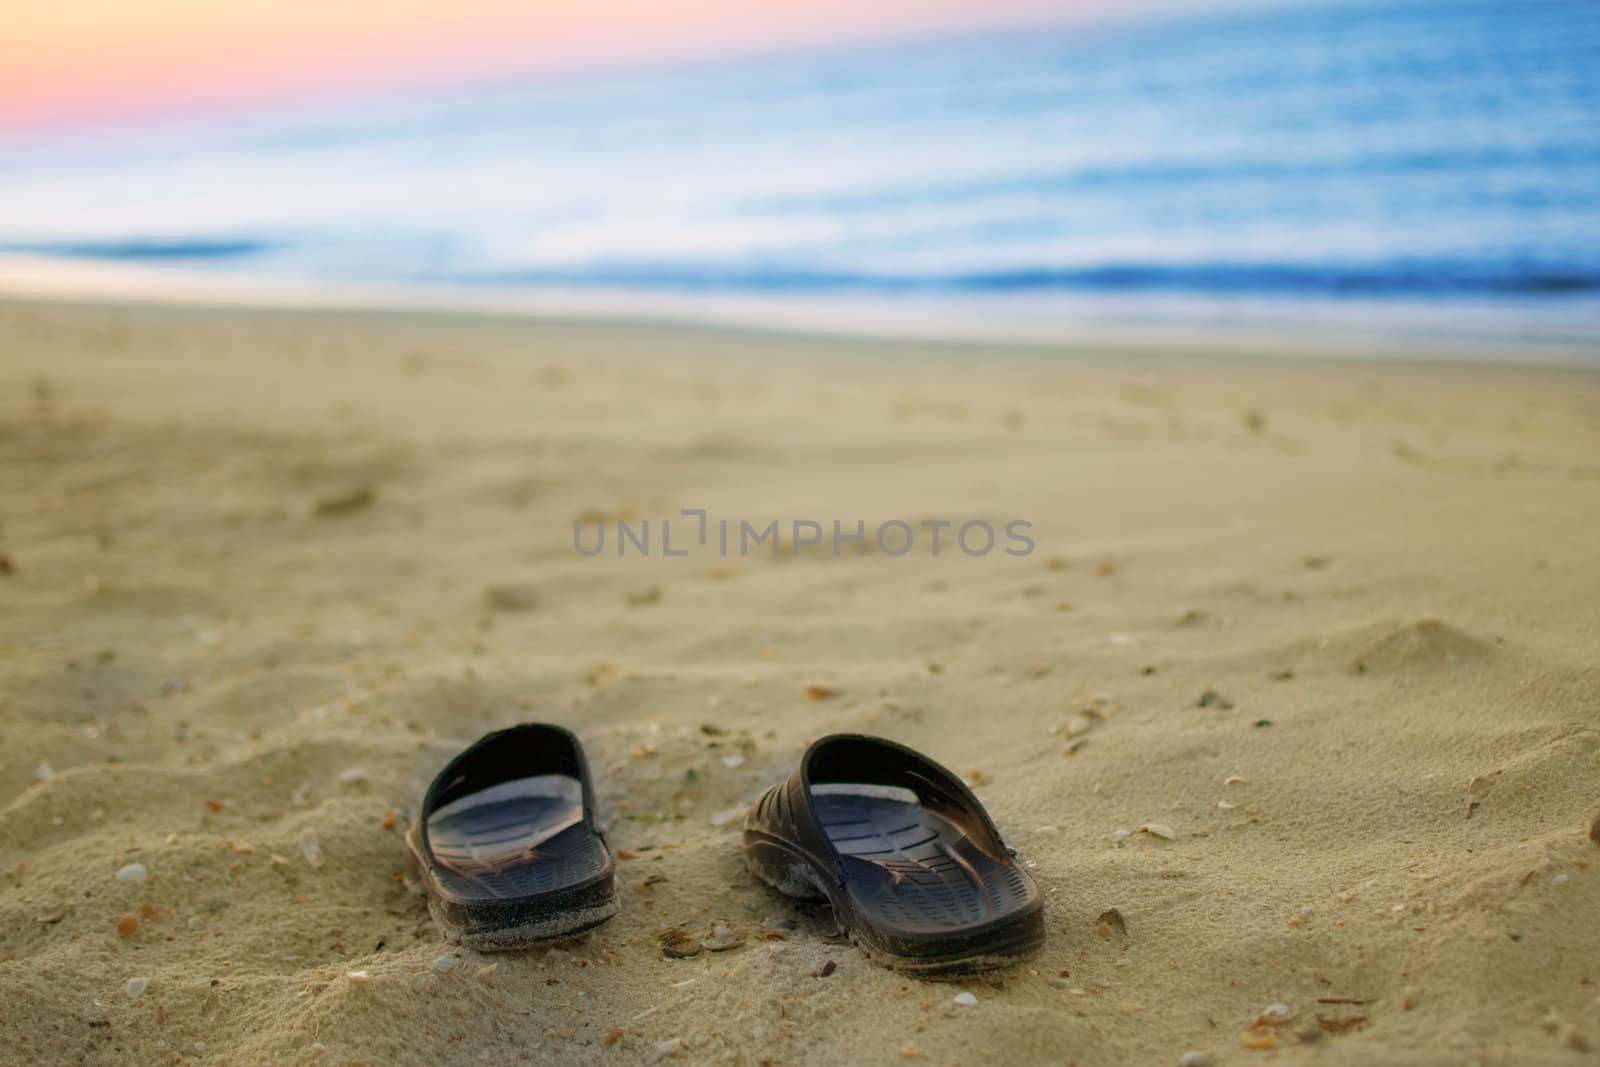 sneakers on a sandy beach  by Lexxizm